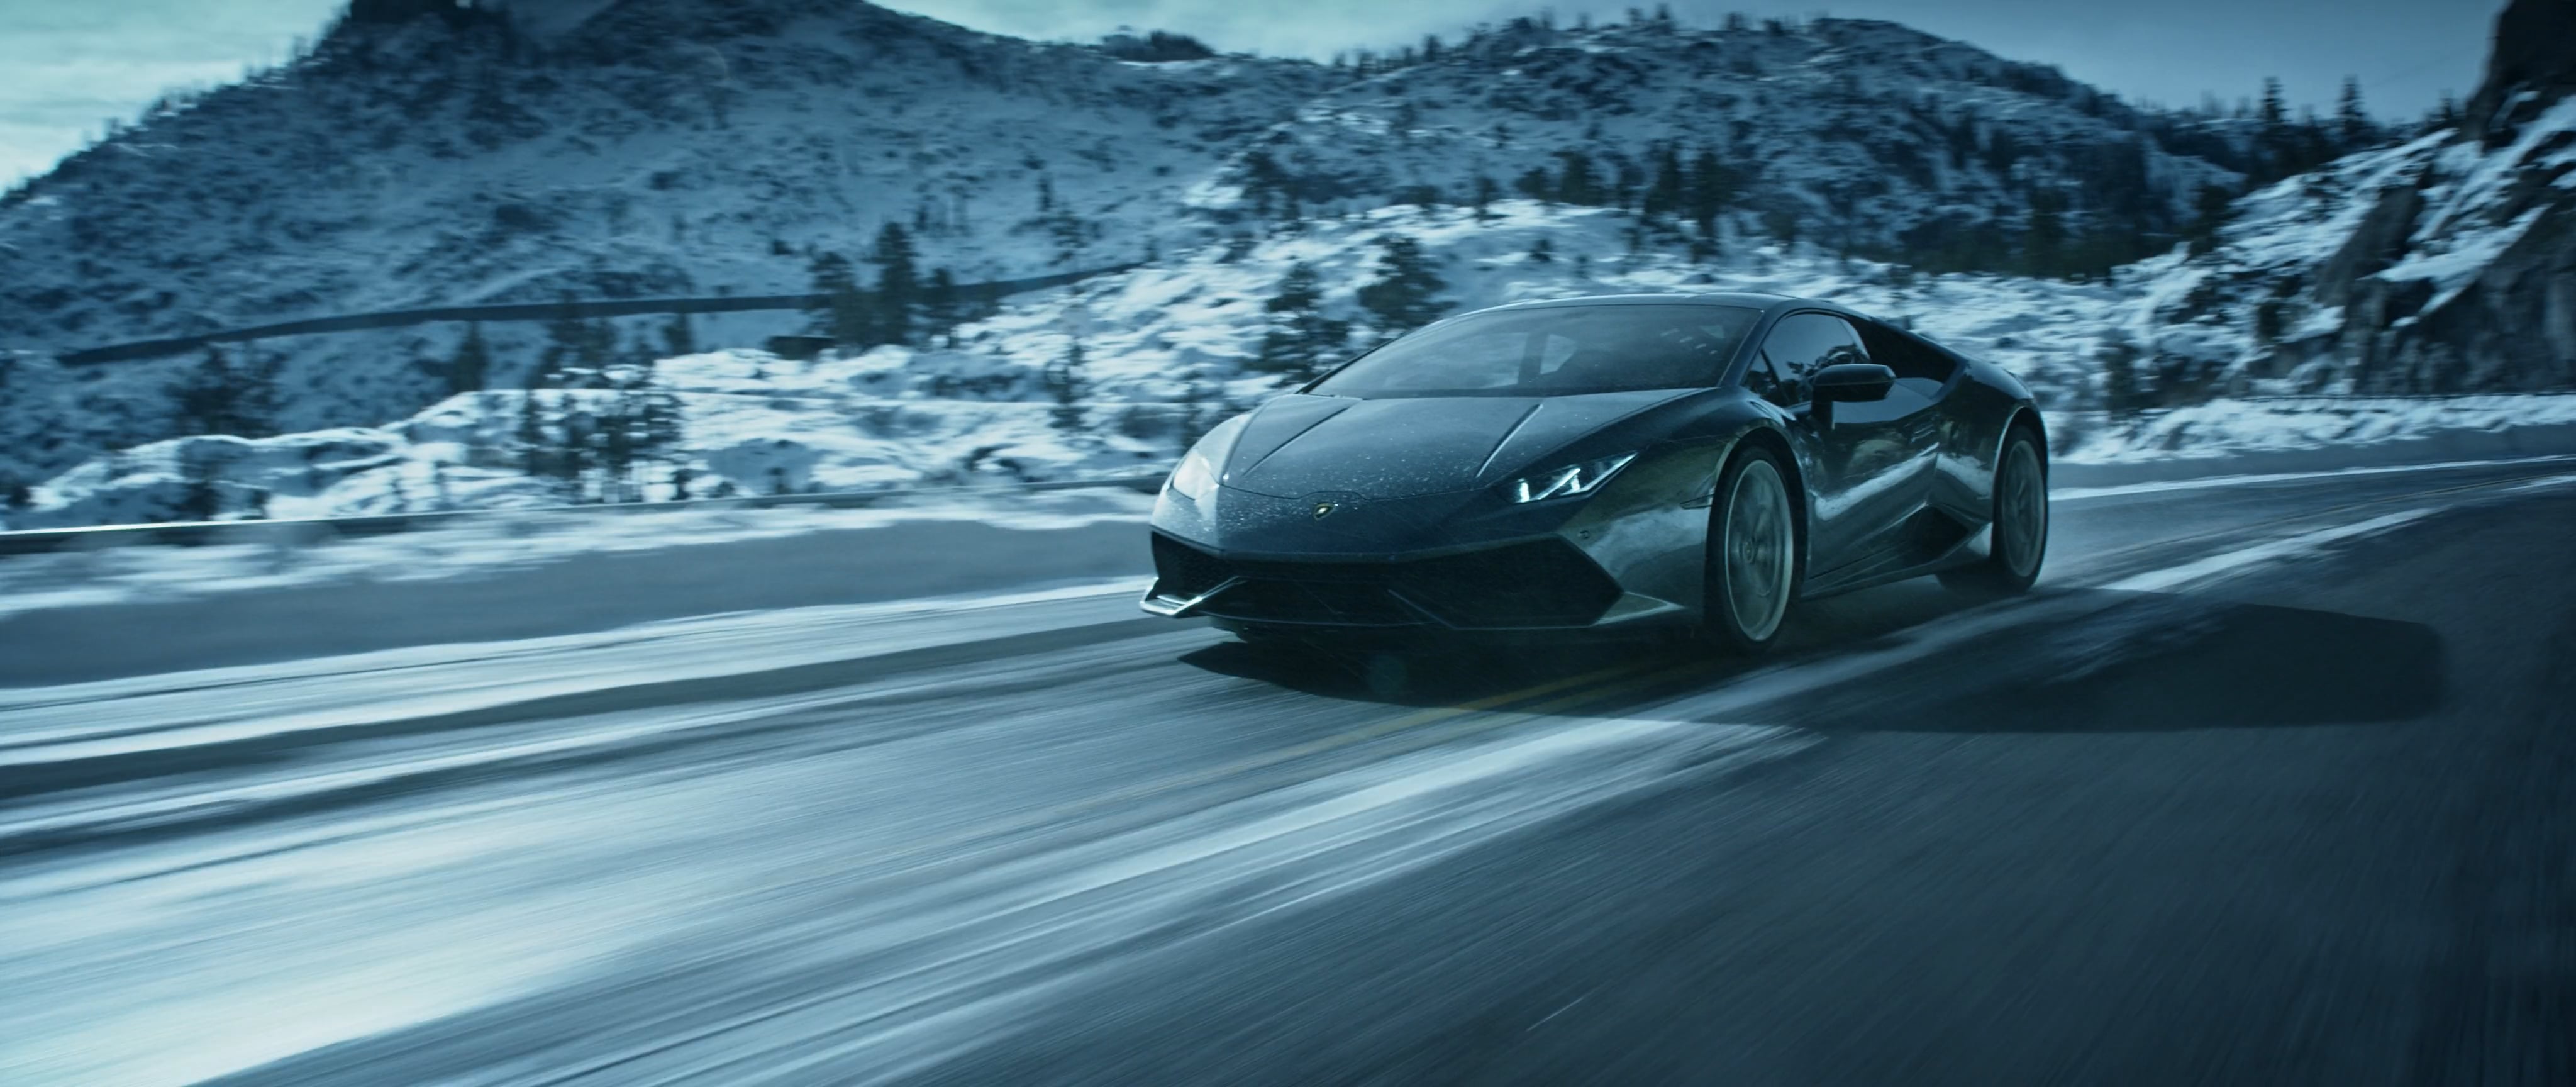 Lamborghini | Fire and Ice on Vimeo